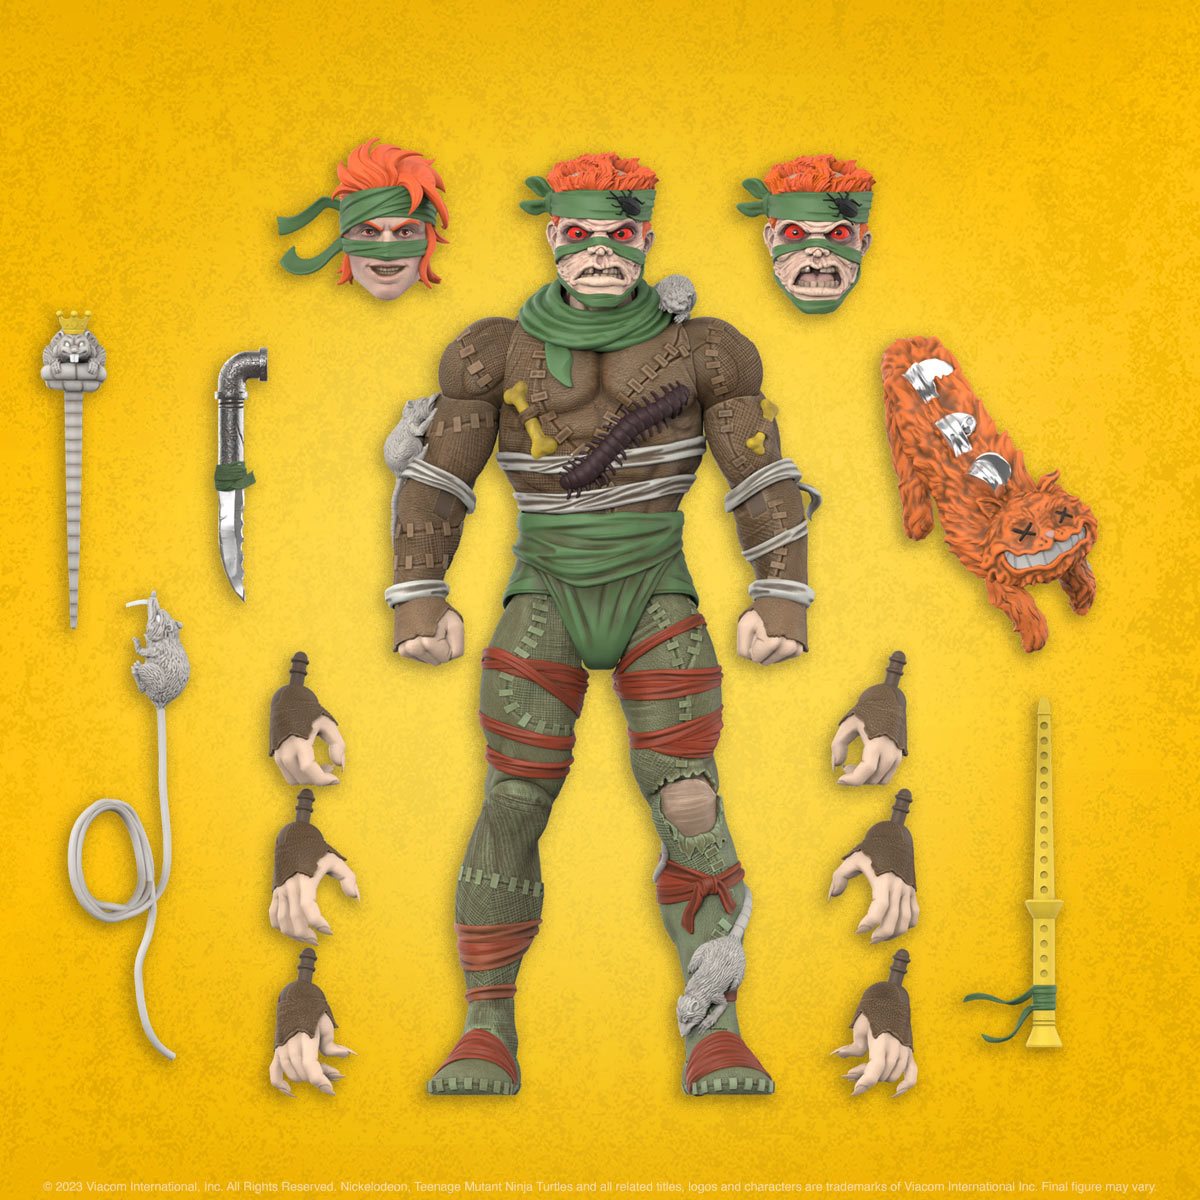 Rat King (Teenage Mutant Ninja Turtles) Custom Action Figure